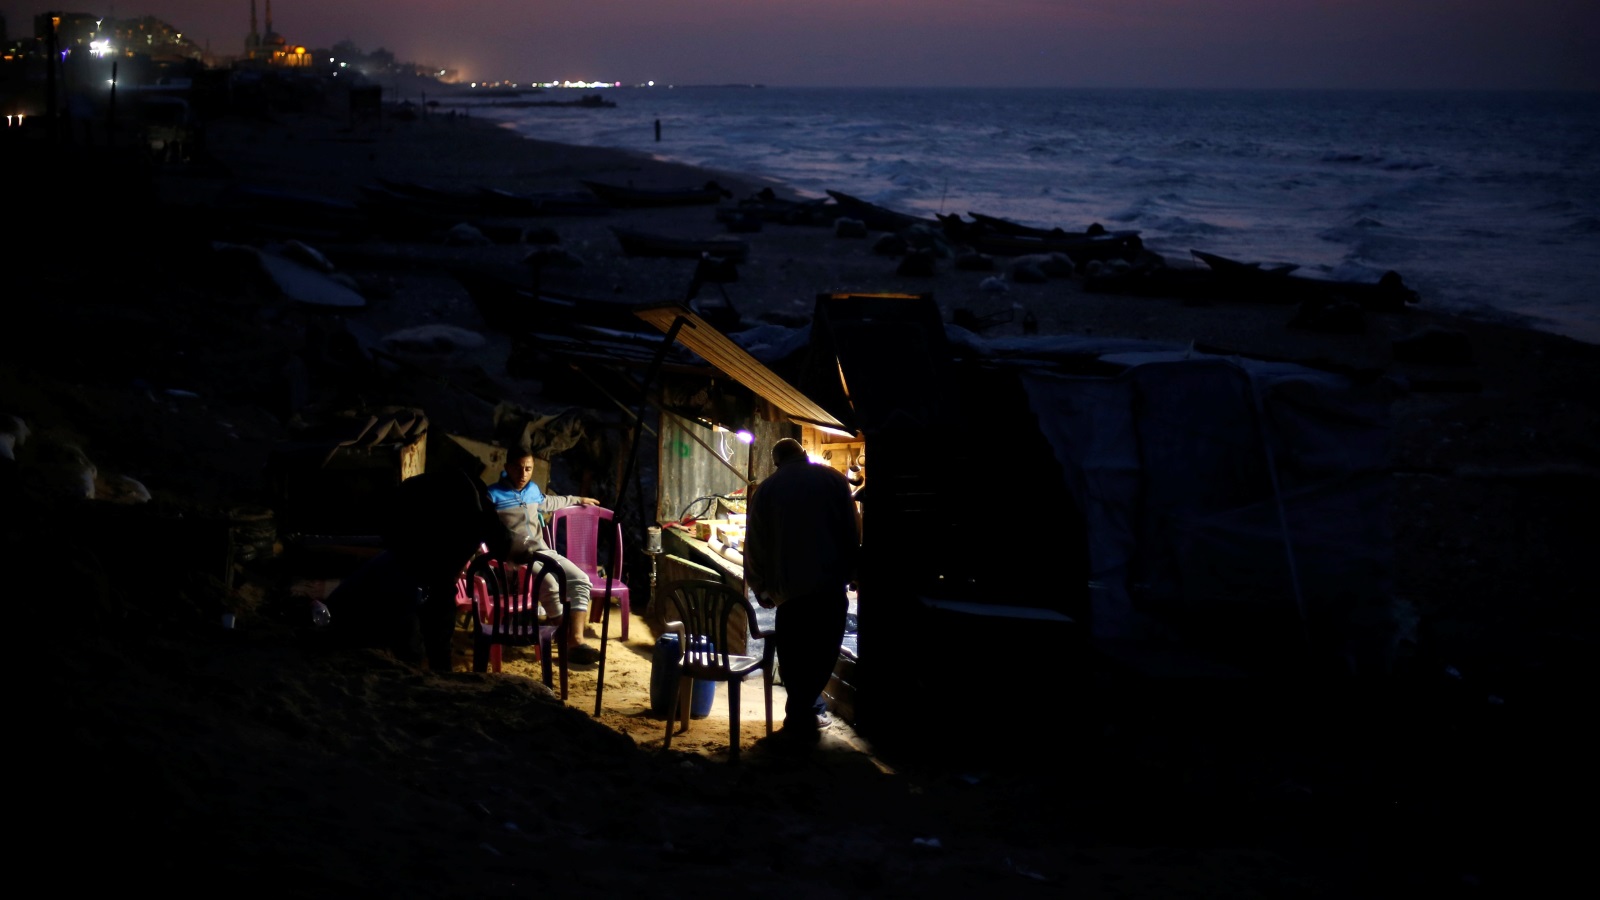 لا أجد نفسي متطرقا لغزة ومشكلاتها إذا لم أتحدث عن غياب الكهرباء، إذ تغيب عن غزة يومياً ما يزيد عن 20 ساعة مقابل وصلها 4 أو 3 ساعات يومياً، ما لم يعد مقبولاً للمواطن، الذي بات ينتظرها على أحر من الجمر